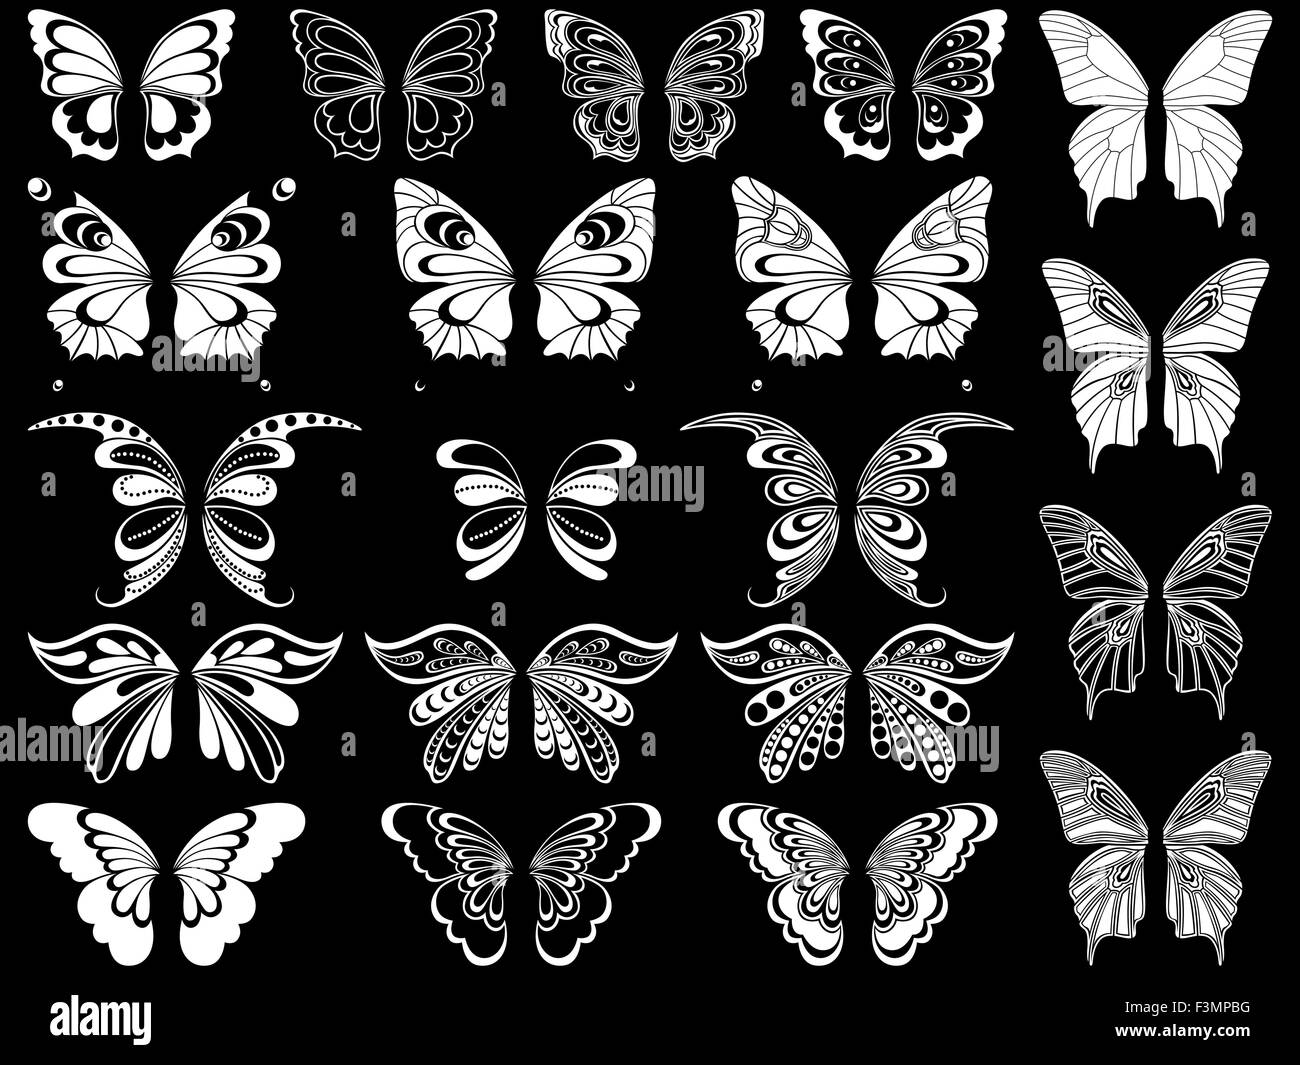 Gruppe von zwanzig weiße ornamentalen Schablonen Schmetterlinge isoliert auf einem schwarzen Hintergrund, Handzeichnung Vektor illustratio Stock Vektor